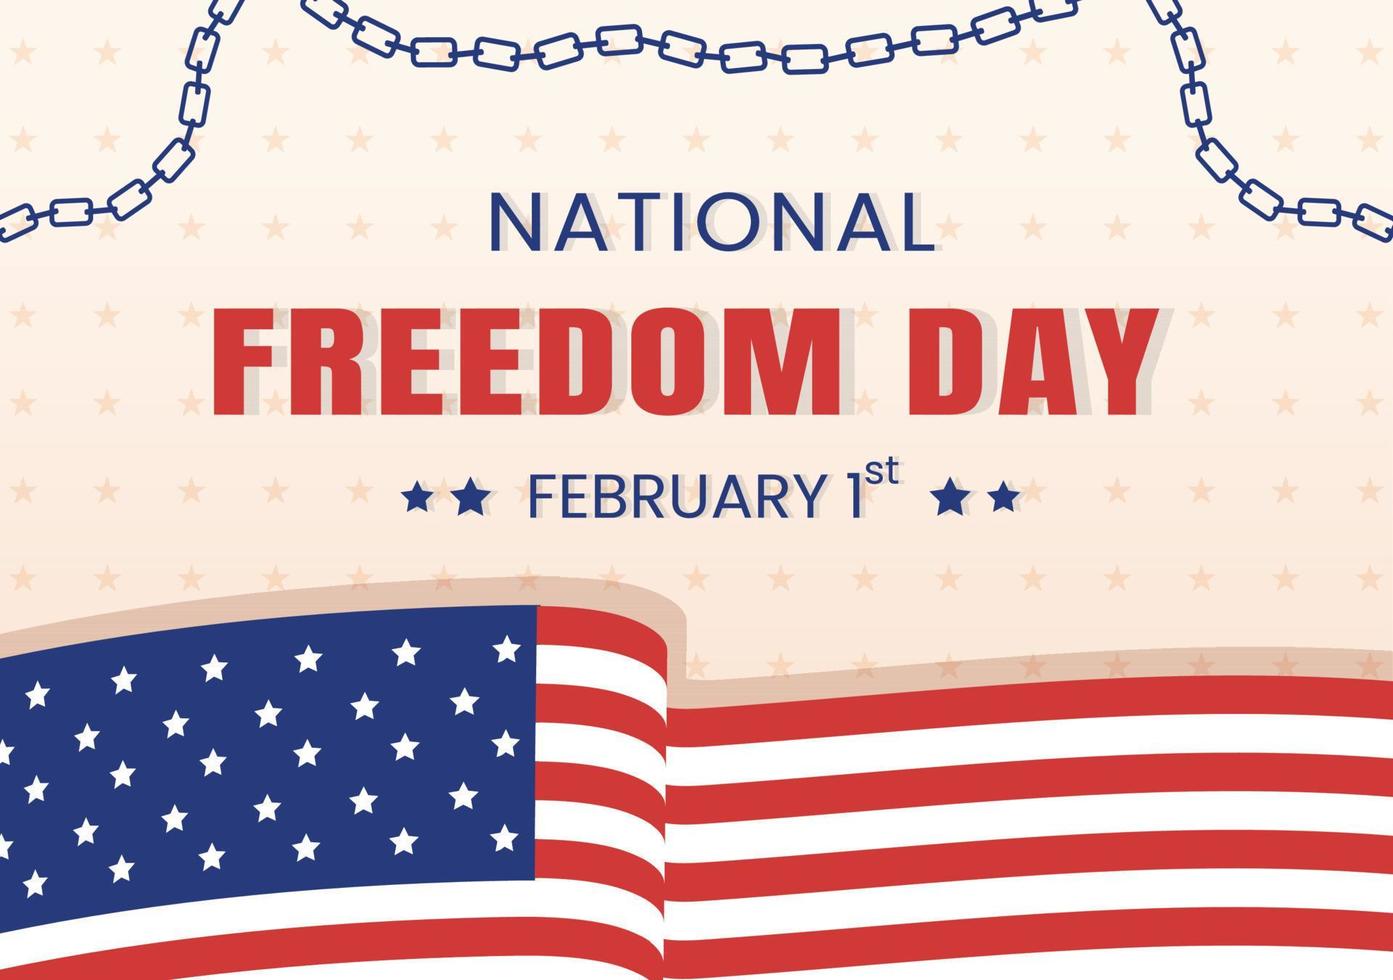 plantilla del día de la libertad nacional ilustración plana de dibujos animados dibujados a mano con bandera americana y manos rompiendo un diseño de esposas vector